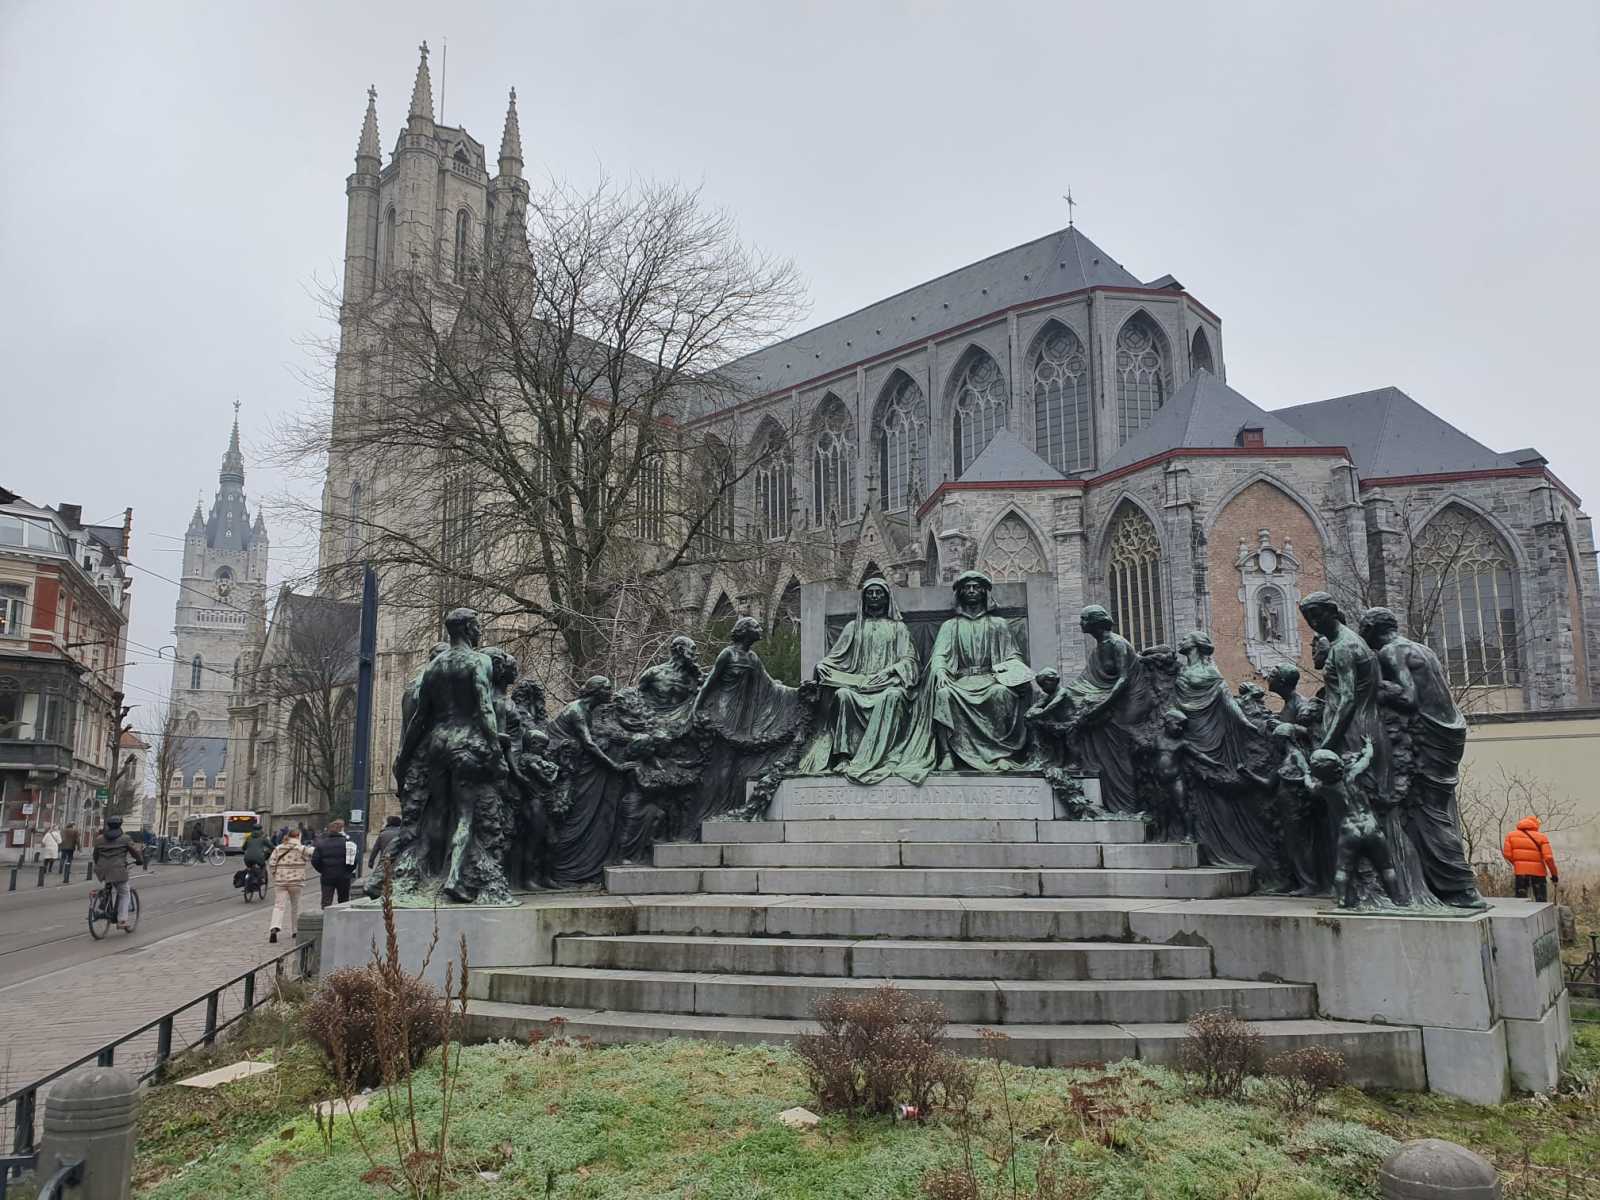 Hubertus és Jan van Eyck szobra, háttérben a genti Szent Bávó katedrális | A szerző felvétele